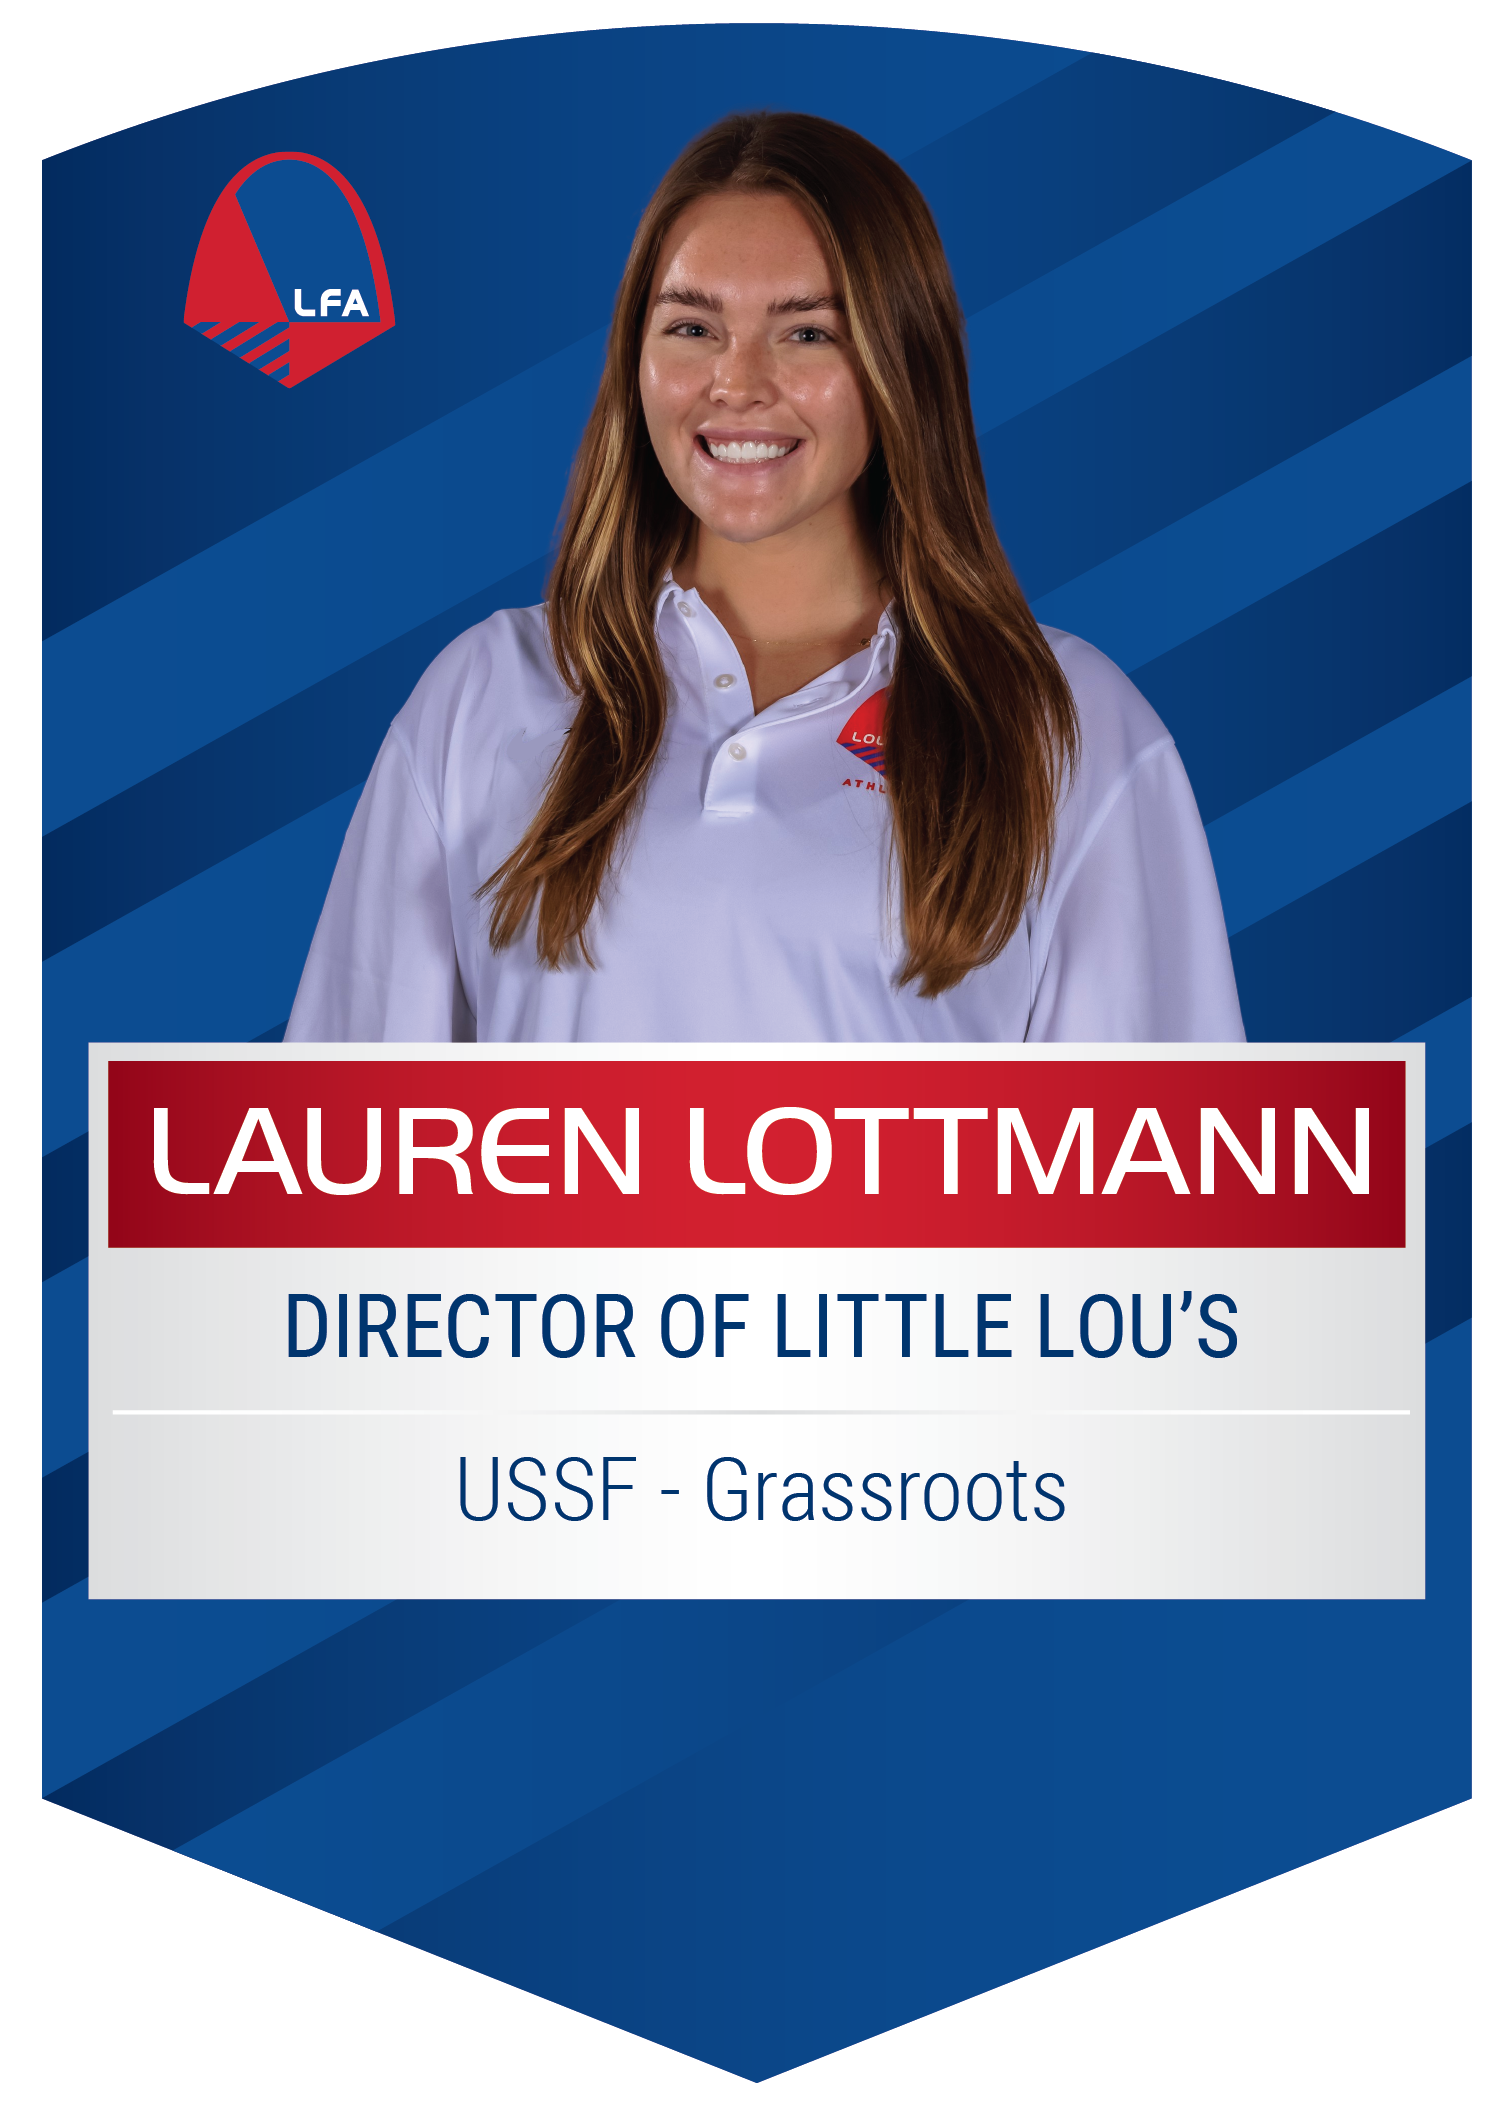 Lauren Lottman